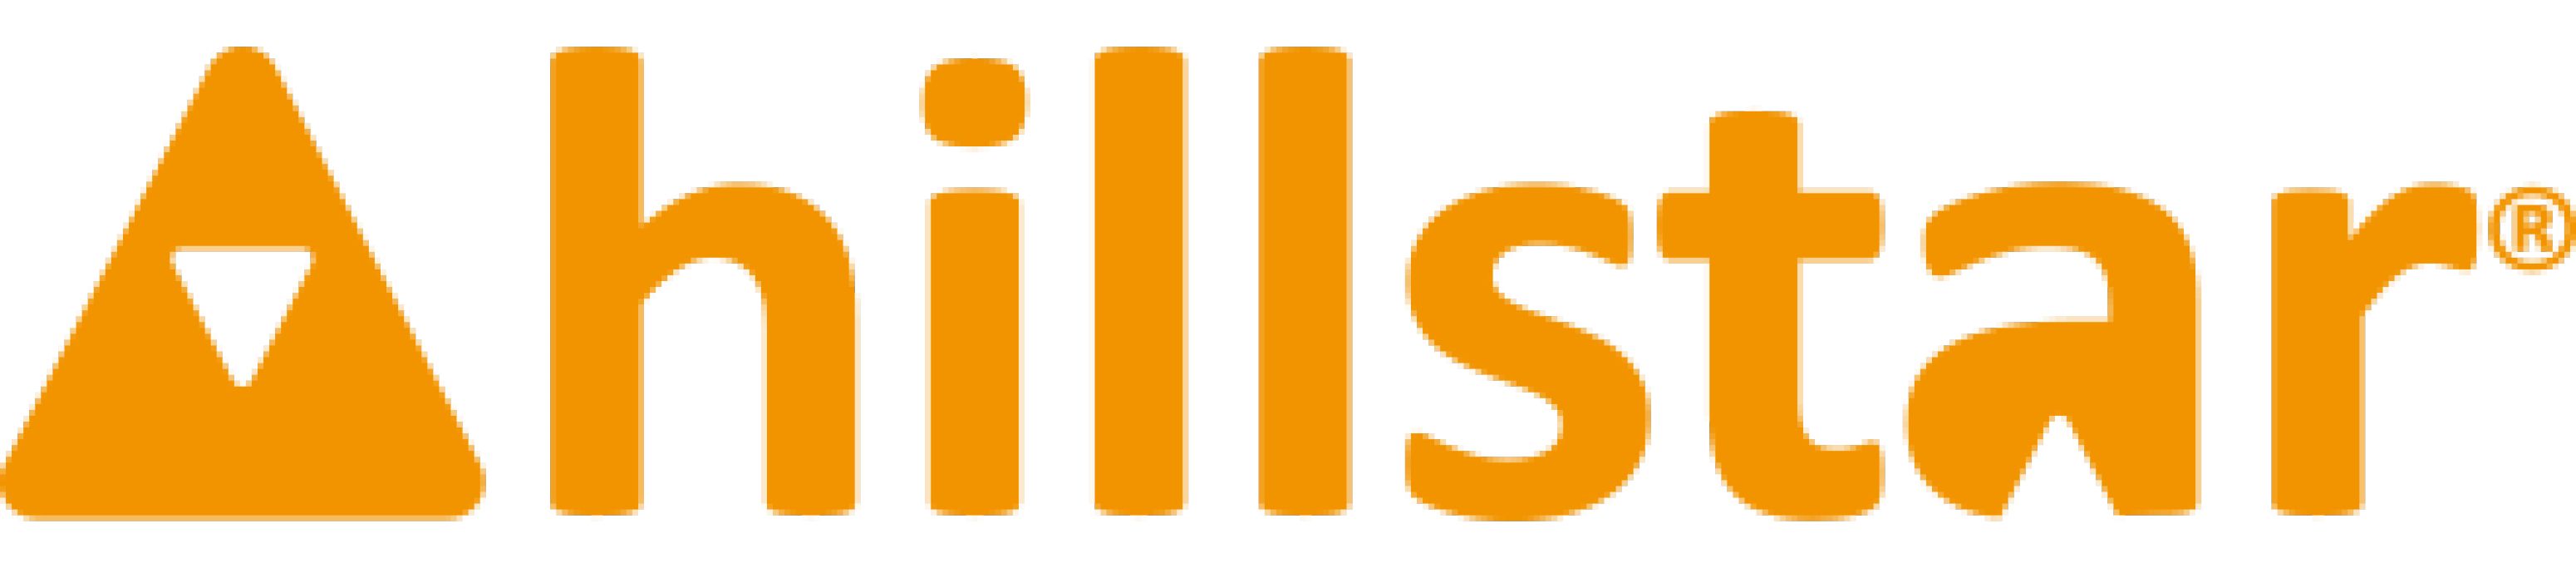 Hillstar logo web small 0